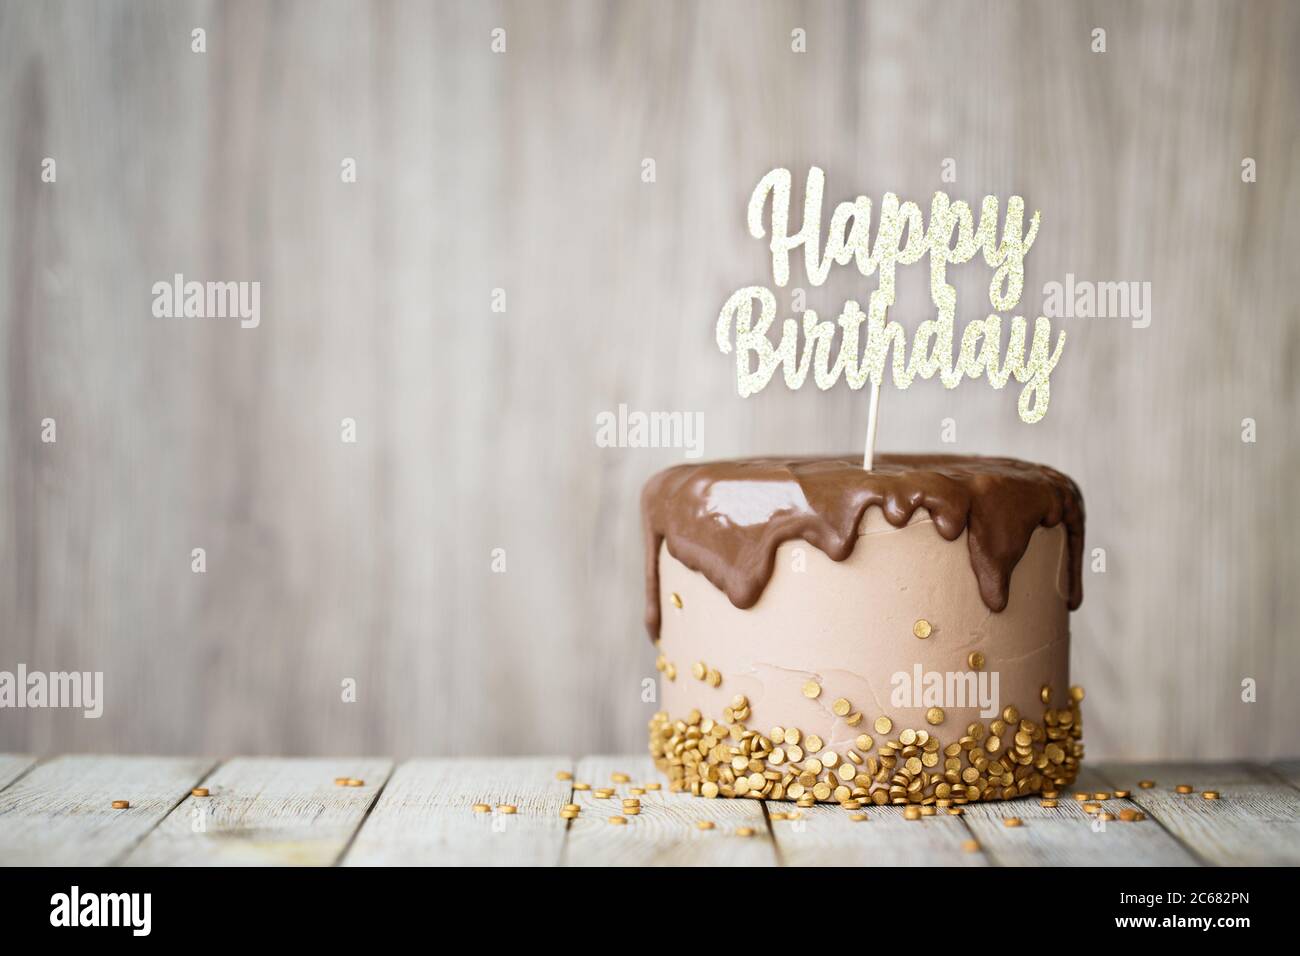 Geburtstagskuchen mit Schokolade Ganache und Geburtstagsbanner verziert Stockfoto